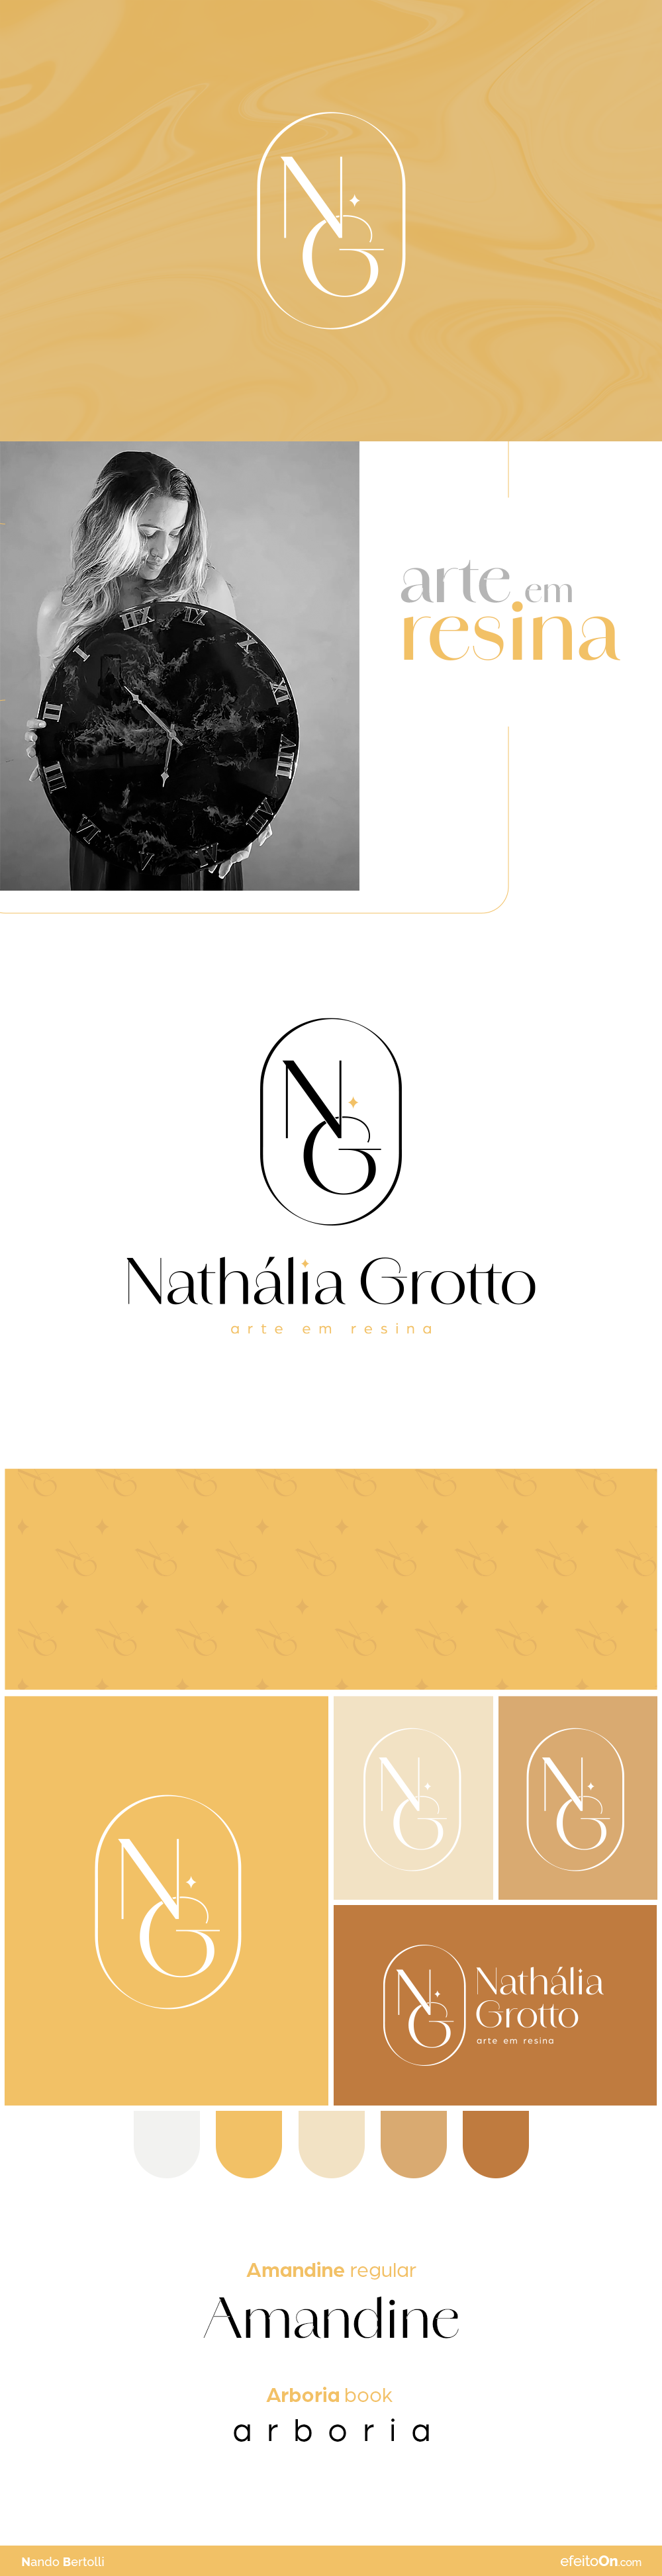 Apresentação_marca-Nethalia-Grotto